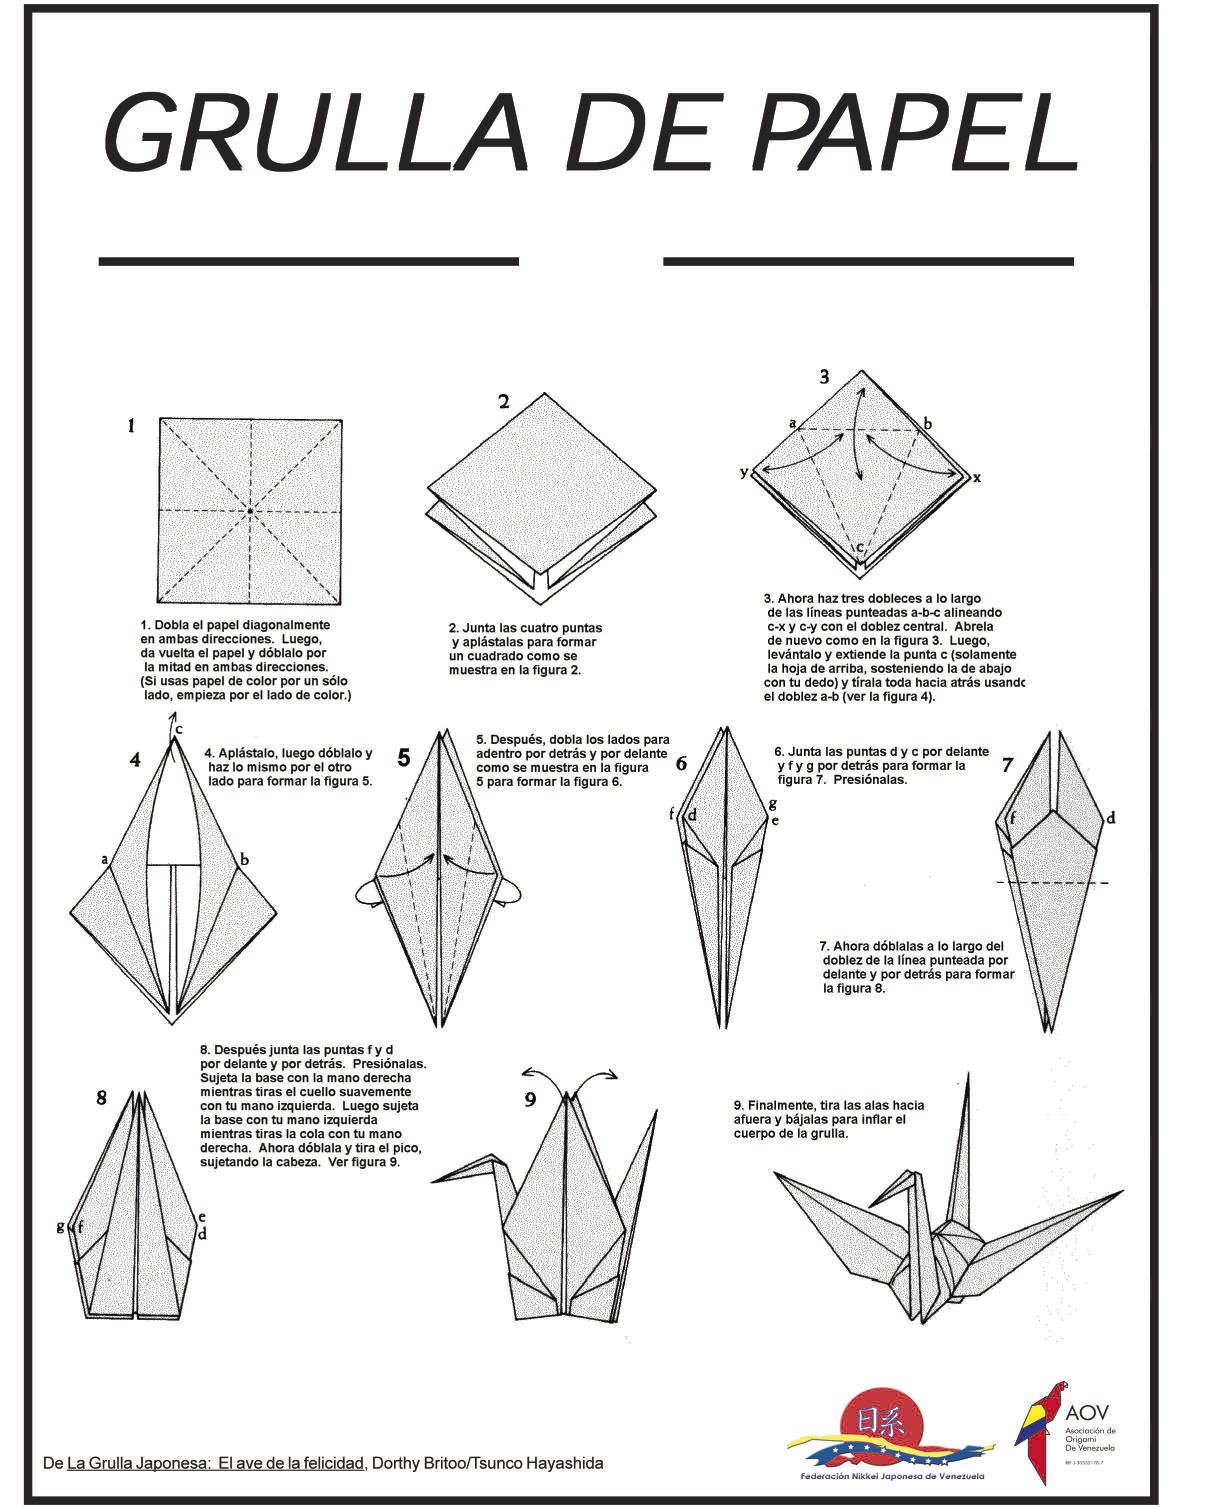 Tomamos ta guãa de un taller con la asociaciãn de origami de venezuela para que puedan hacerla en casa el origami gâ grulla de papel grullas origami origami